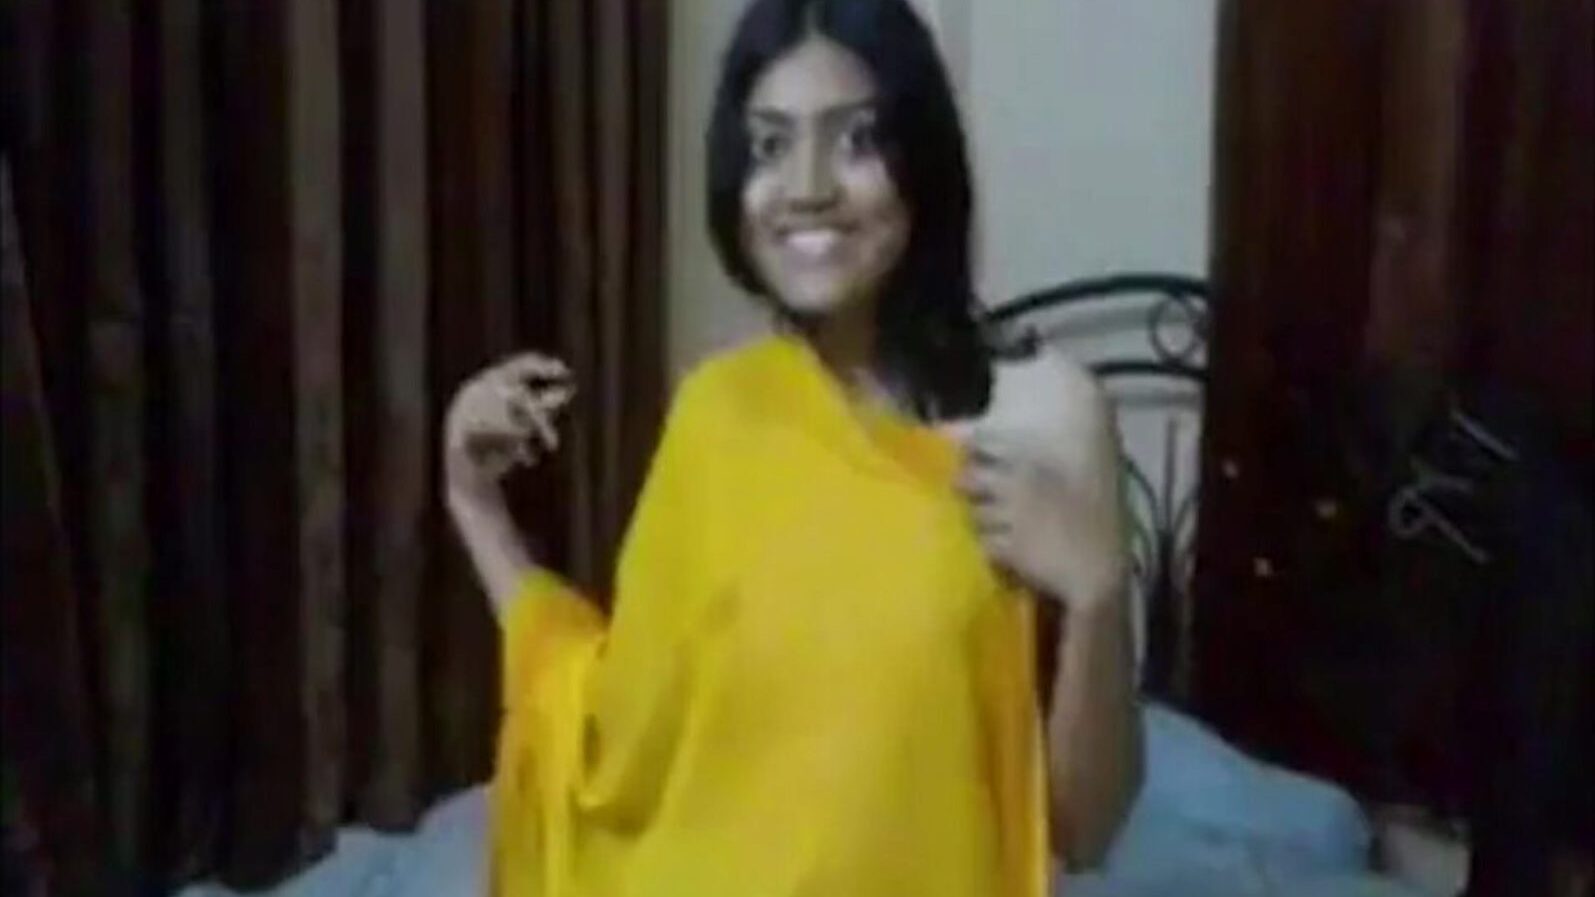 indian girl girl fuck by stepbrother, porn 0c: xhamster watch indian college girl fuck by stepbrother επεισόδιο στο xhamster, ο τεράστιος ιστότοπος hd fuckfest tube με τόνους δωρεάν για όλους ασιατικούς σκατά online & πίπα πορνό ταινίες